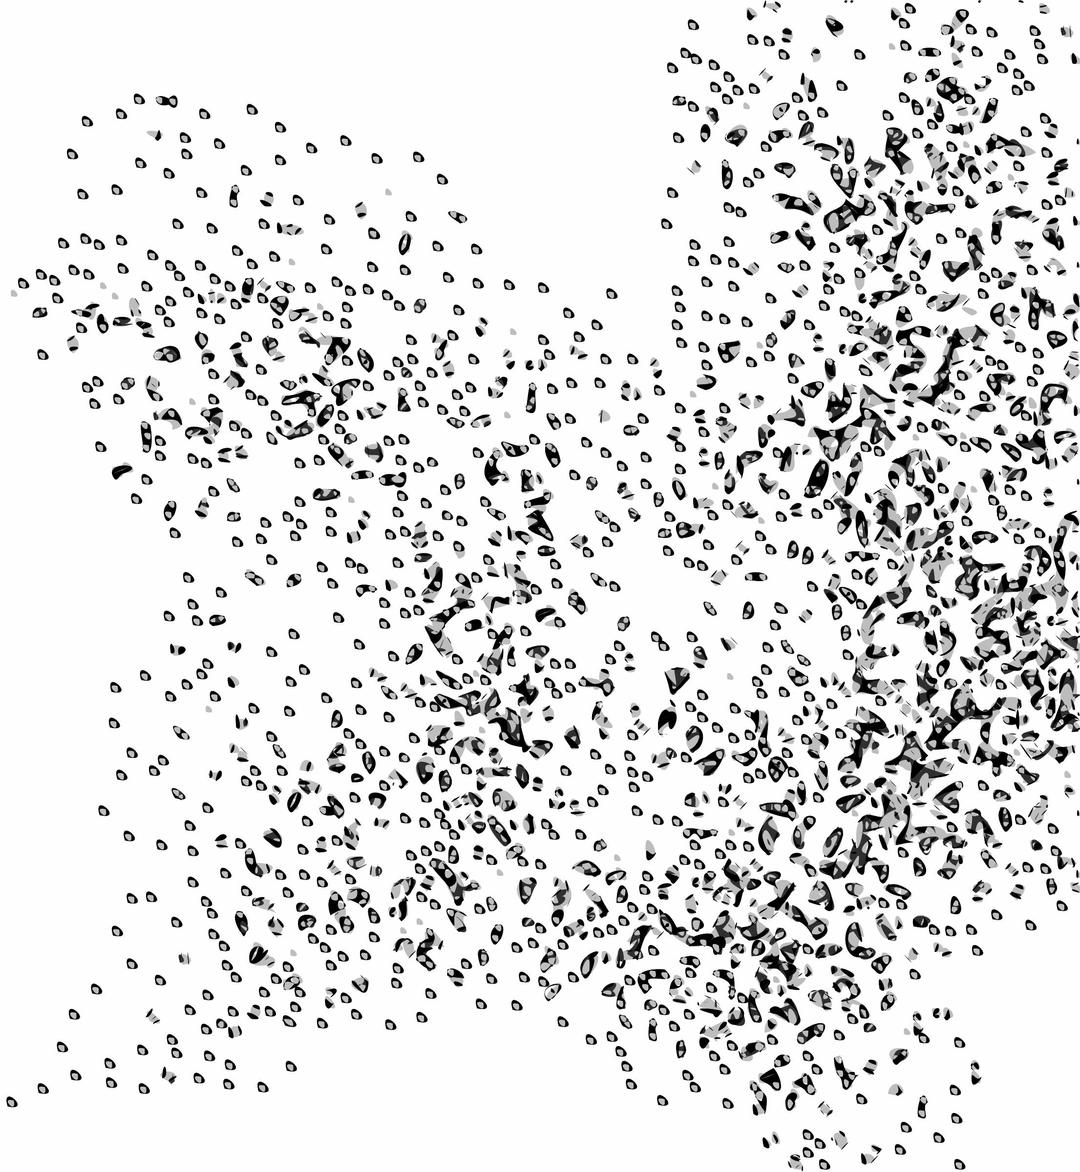 Network Node Cloud Swarm Simple png transparent